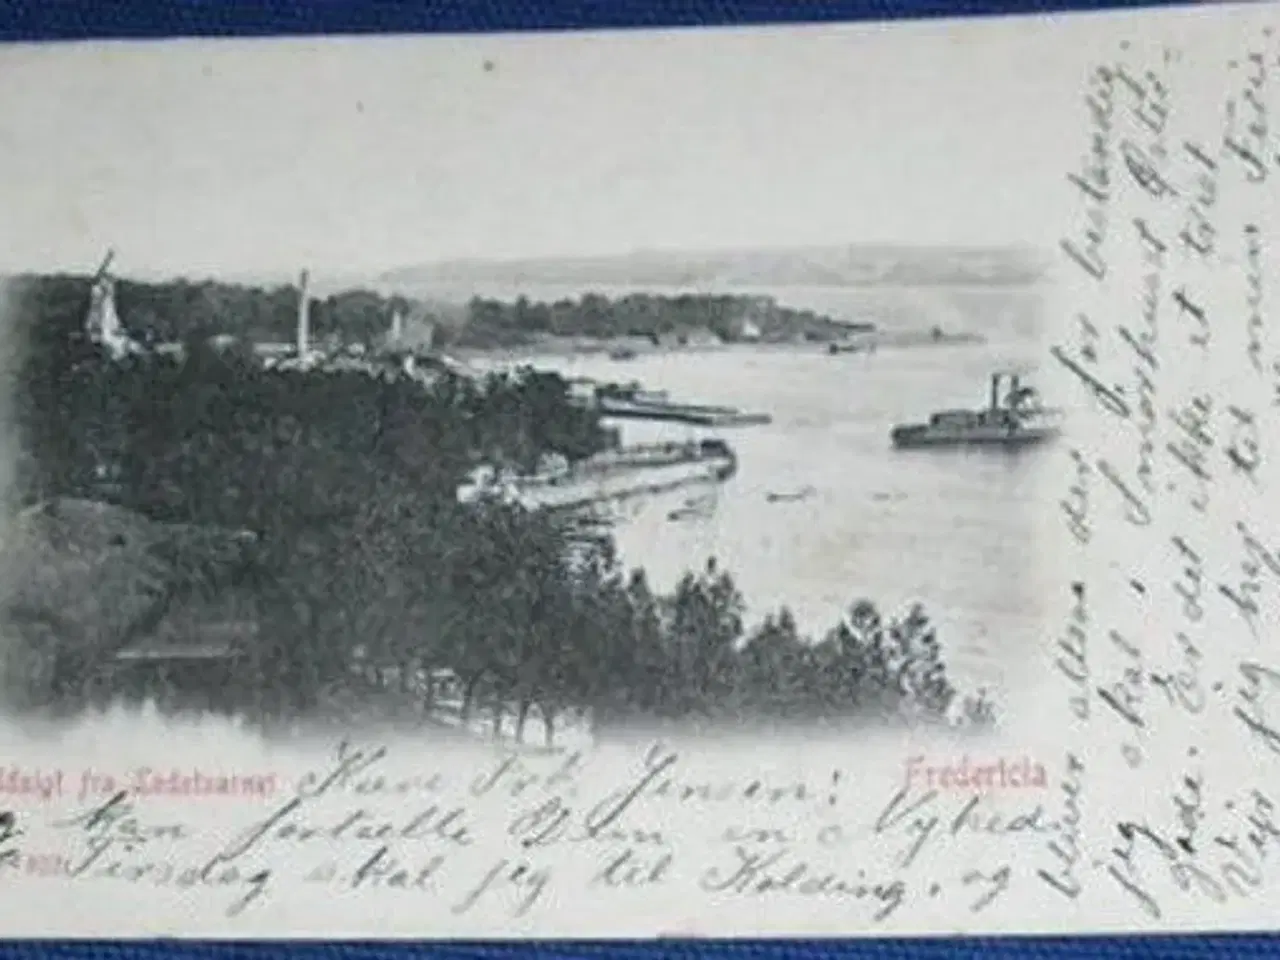 Billede 2 - Fredericia. udsigt fra lodstårnet